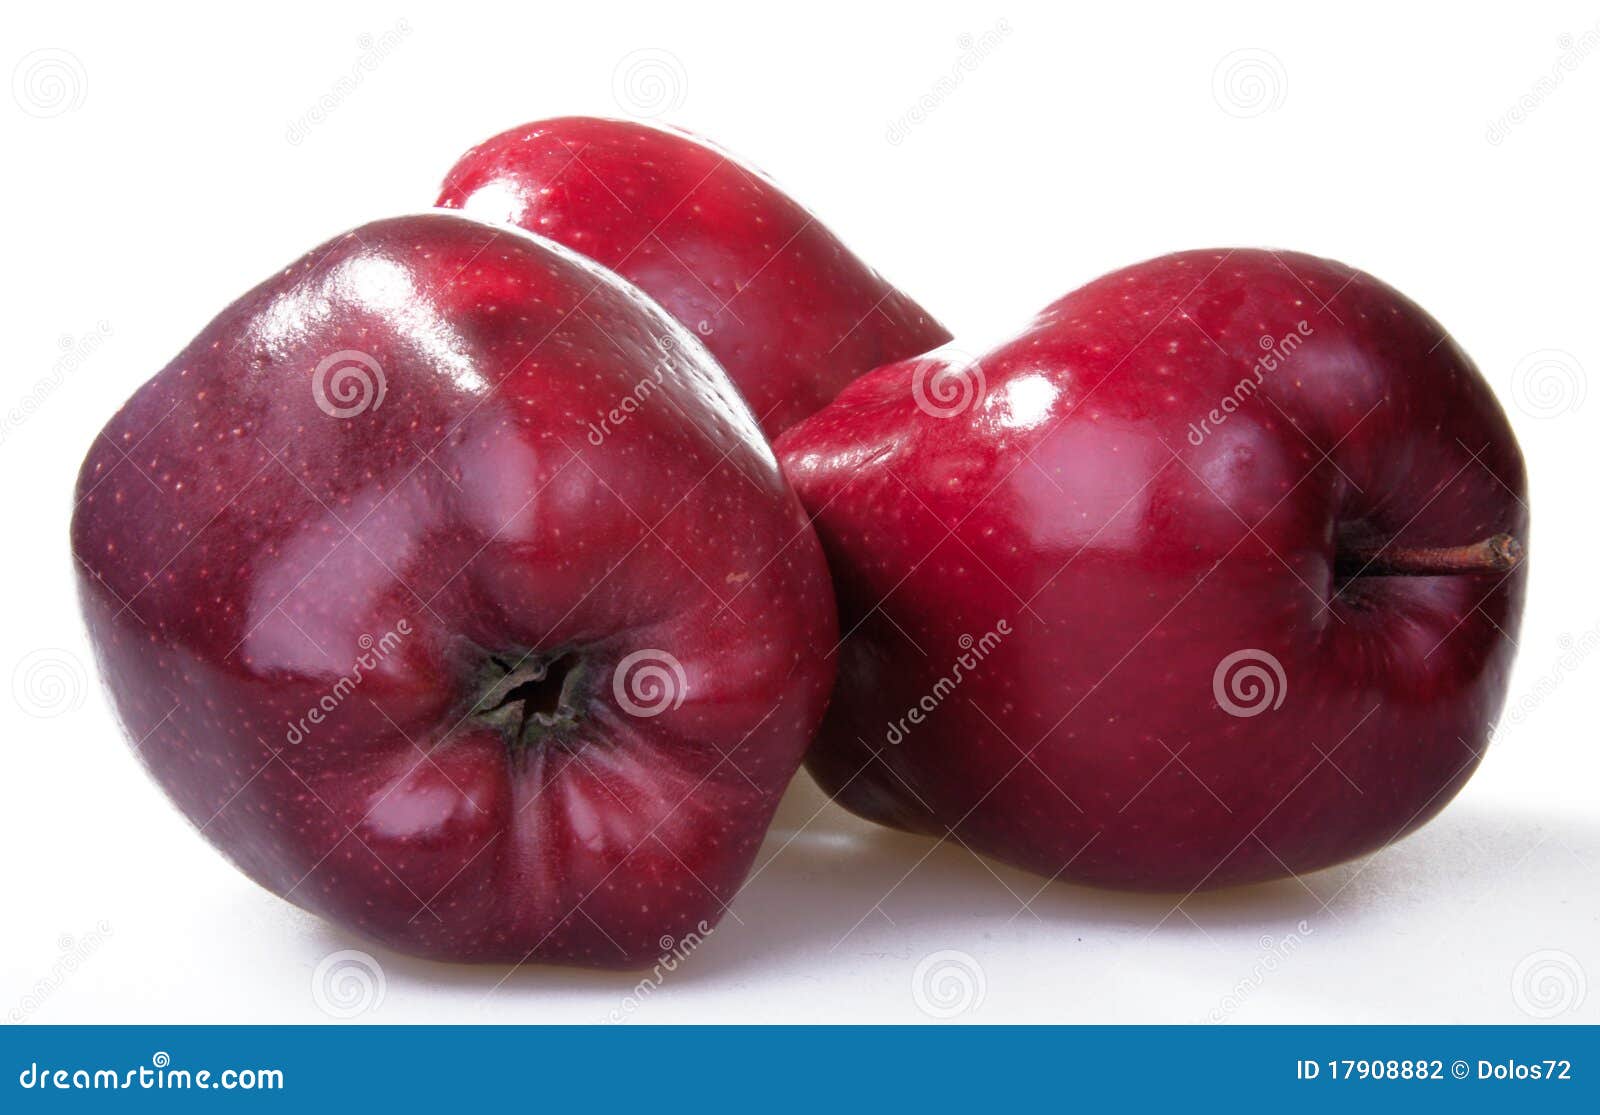 Der rote Apfel stockfoto. Bild von vertikal, frucht, einzeln - 17908882